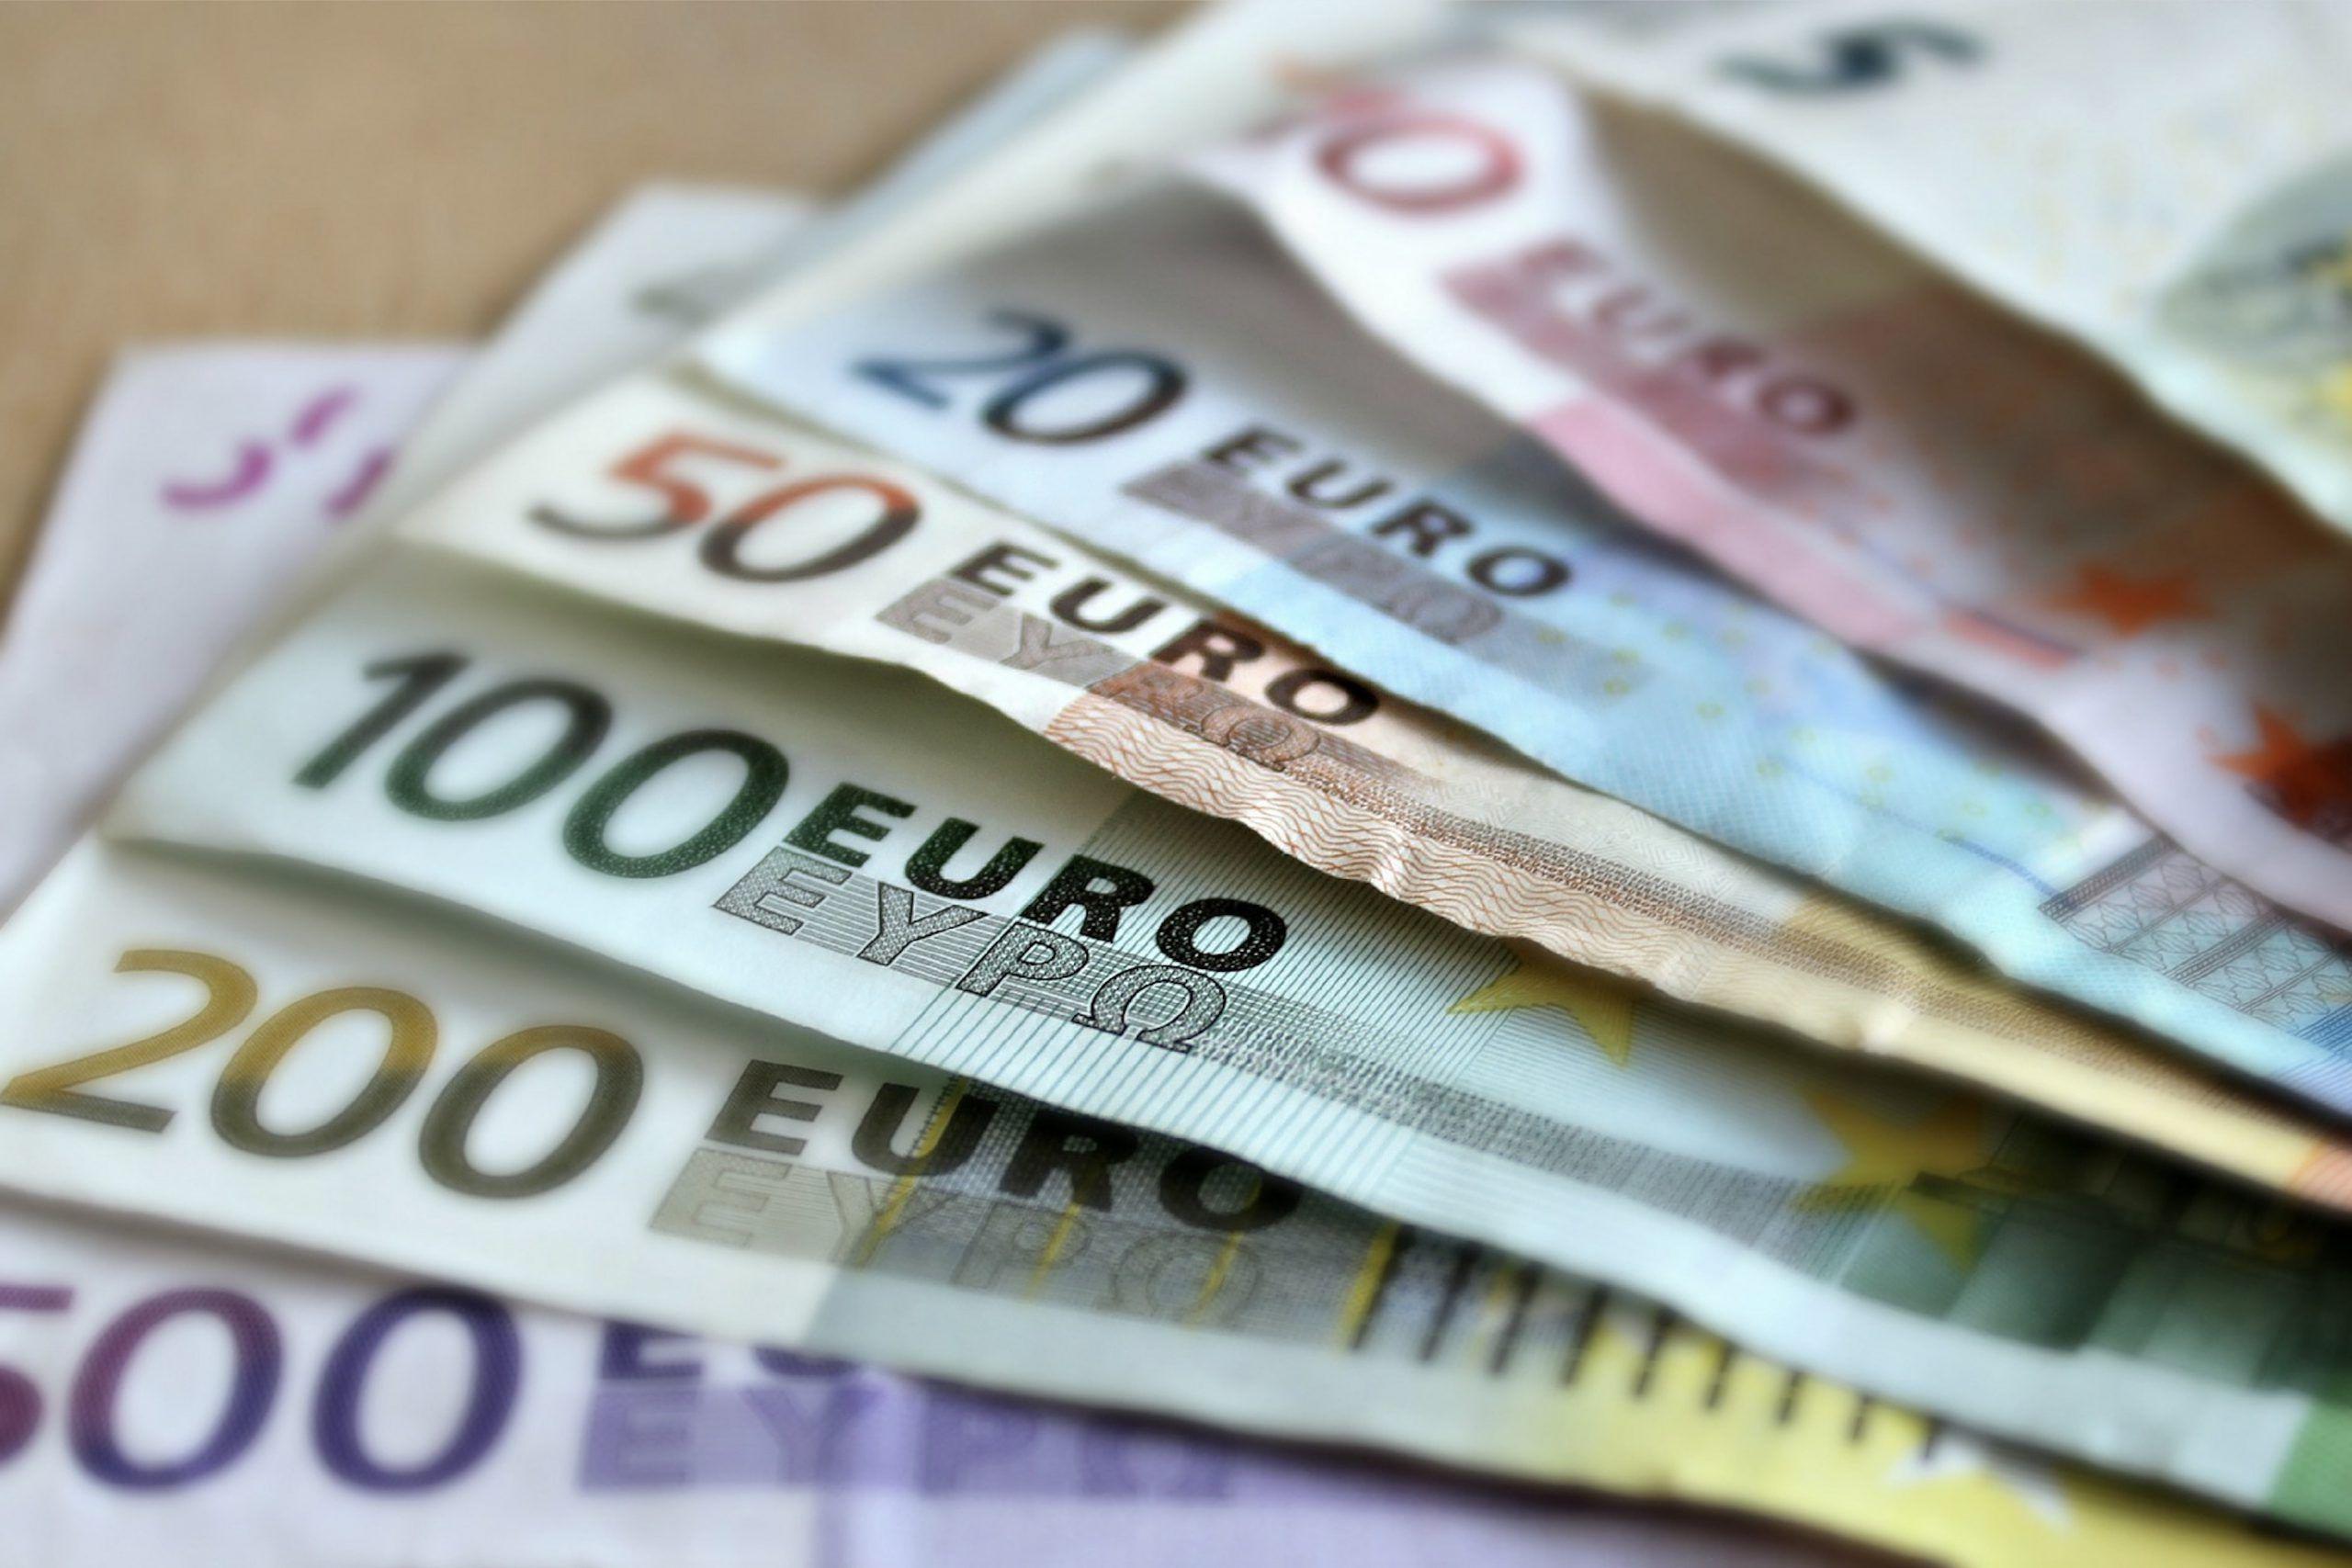 Европейские банки получили прибыль в размере 100 млрд евро от повышения процентных ставок